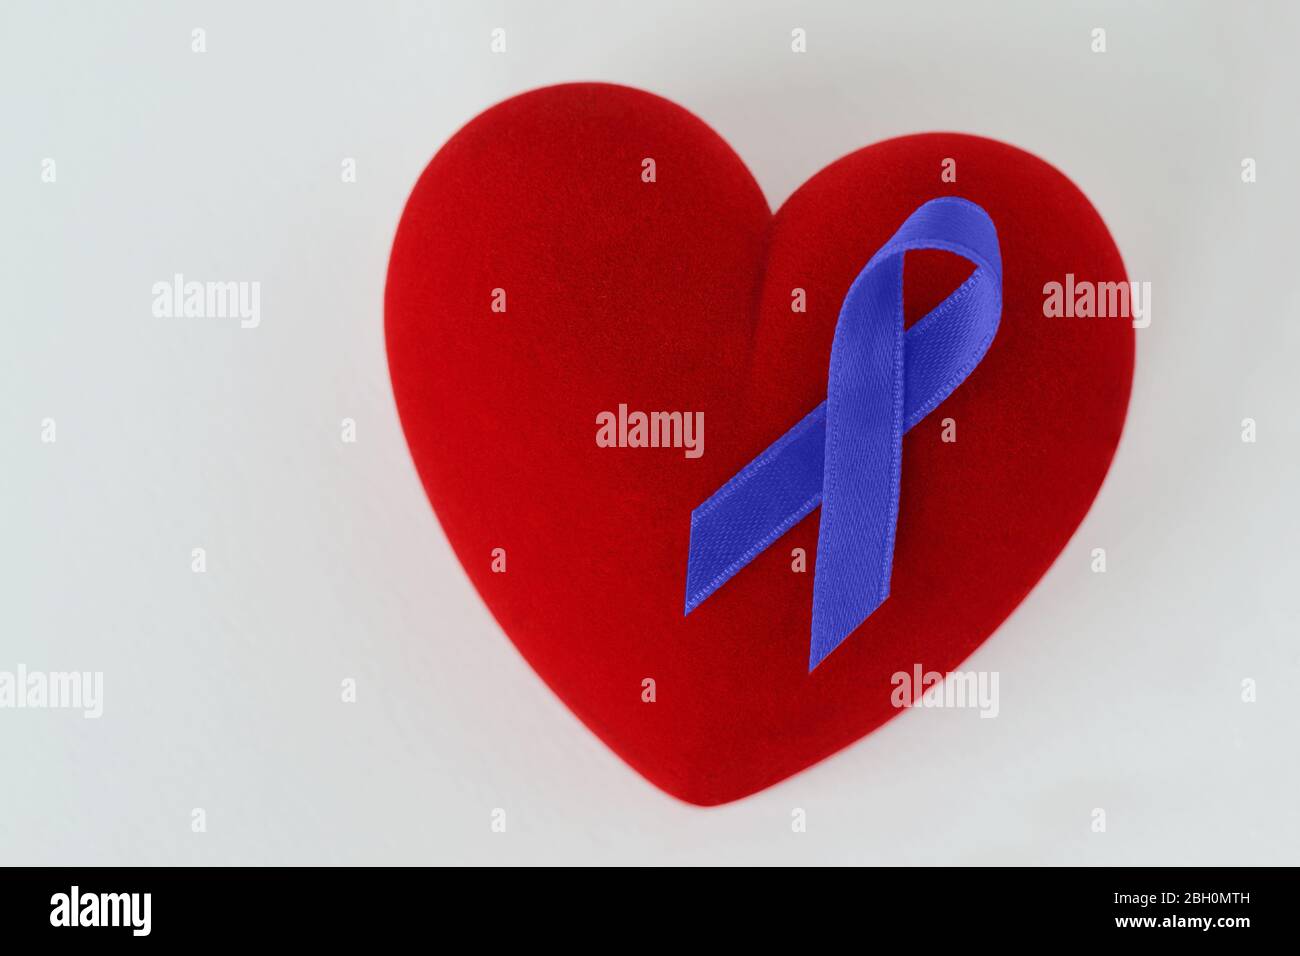 Herz mit blauem Band auf weißem Hintergrund - Konzept des Prostatakrebs Bewusstsein Stockfoto